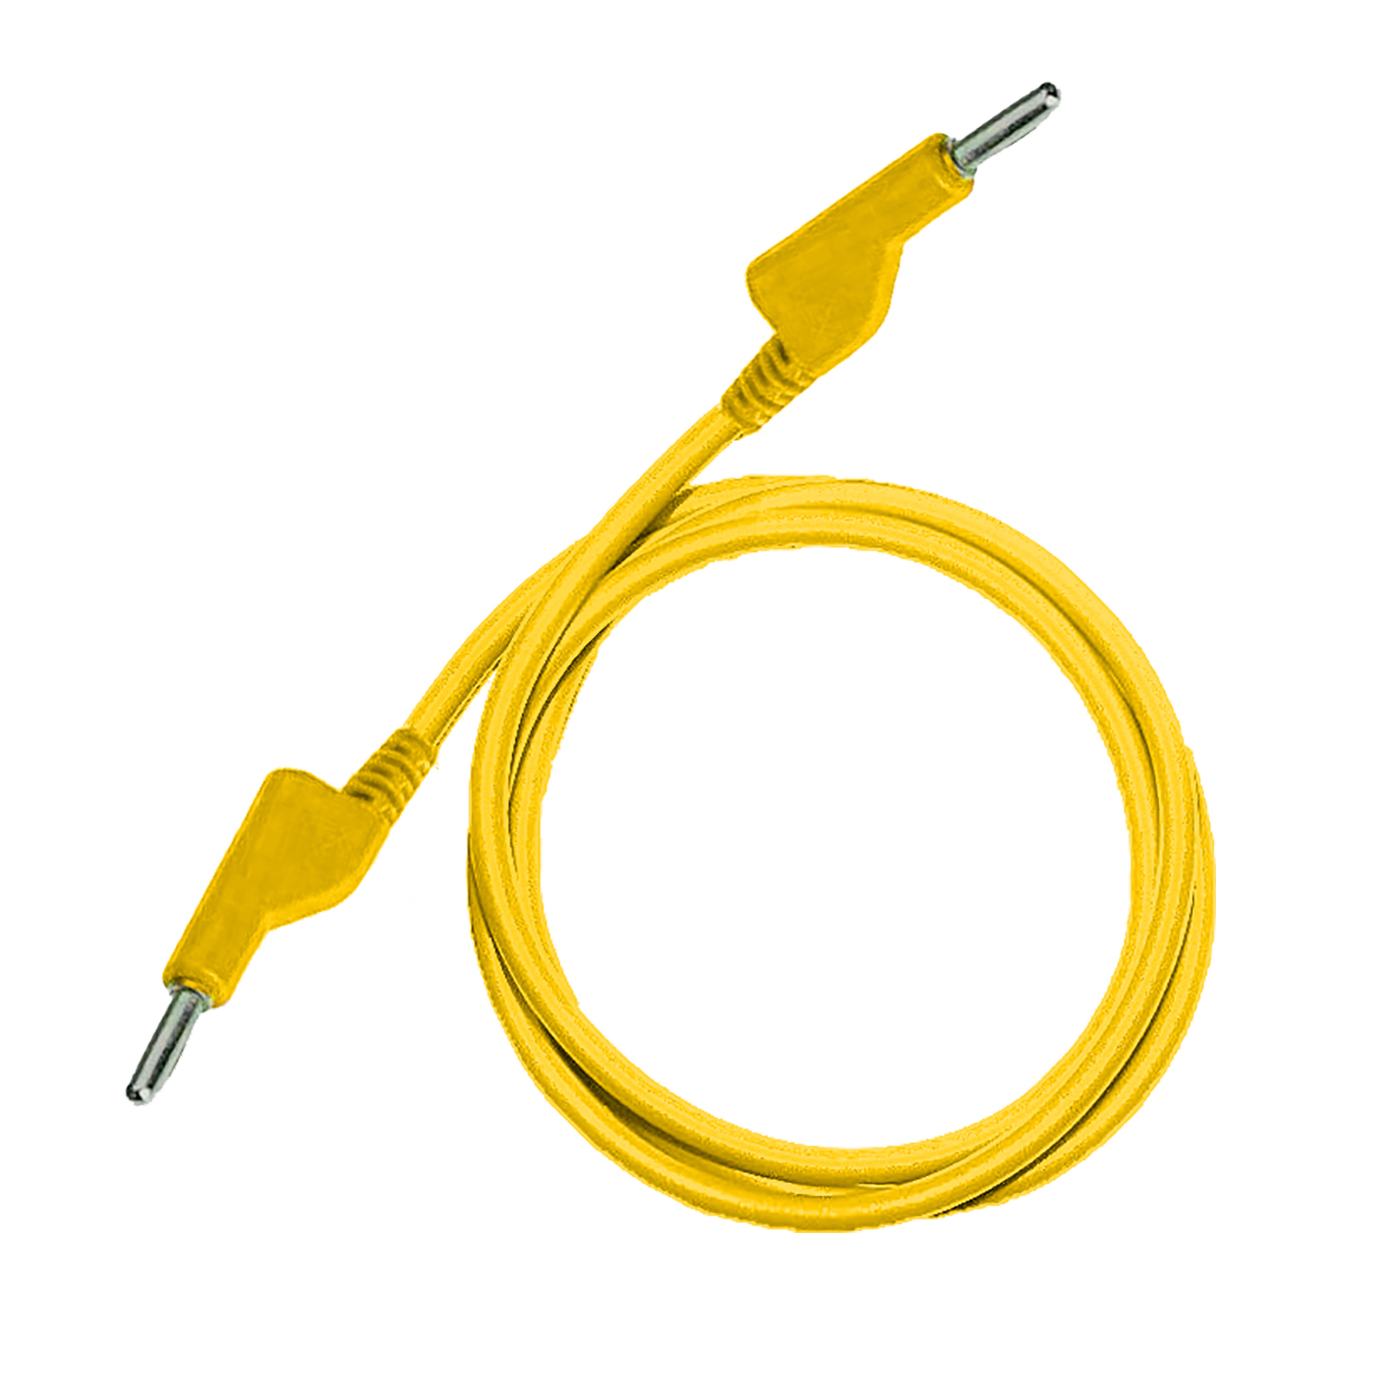 Testovací / laboratorní kabel Ø4 mm Barva: Žlutá, Model: Banánek-banánek, Rozměr: 50 cm